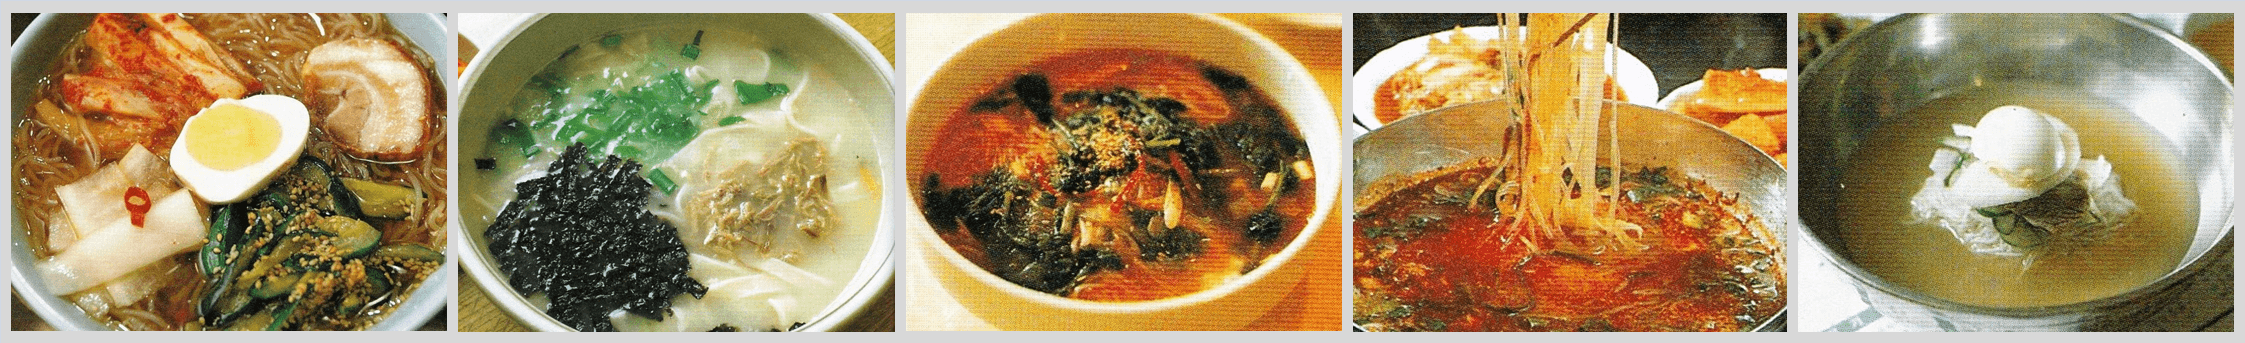 韓国の麺料理